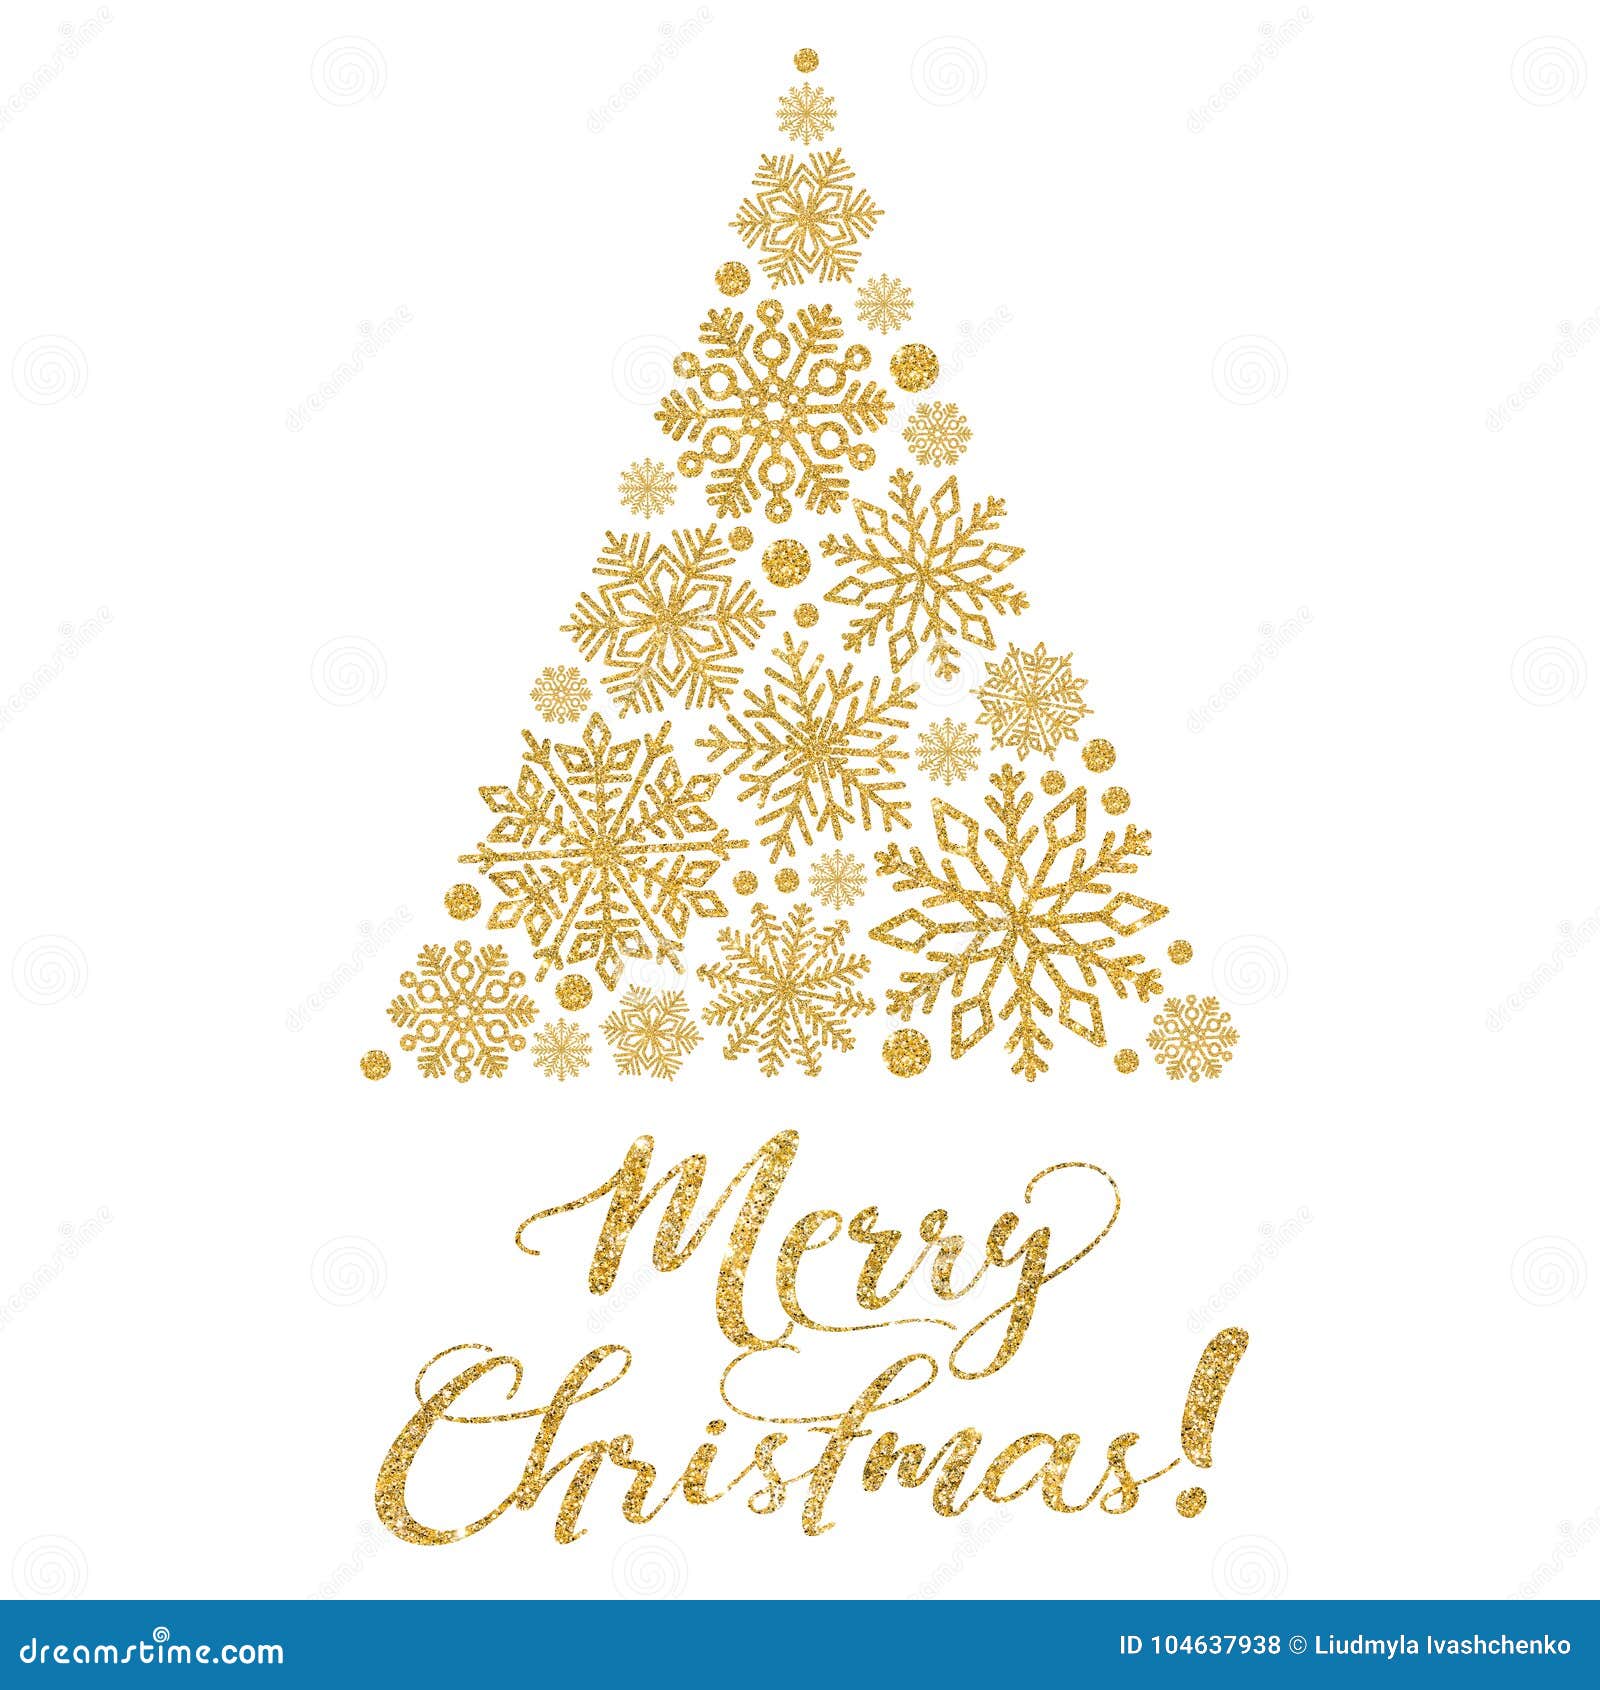 Cartão Com Texto Dourado E árvore De Natal Abstrata Em Um Fundo Branco  Ilustração Stock - Ilustração de snowflake, evento: 104637938